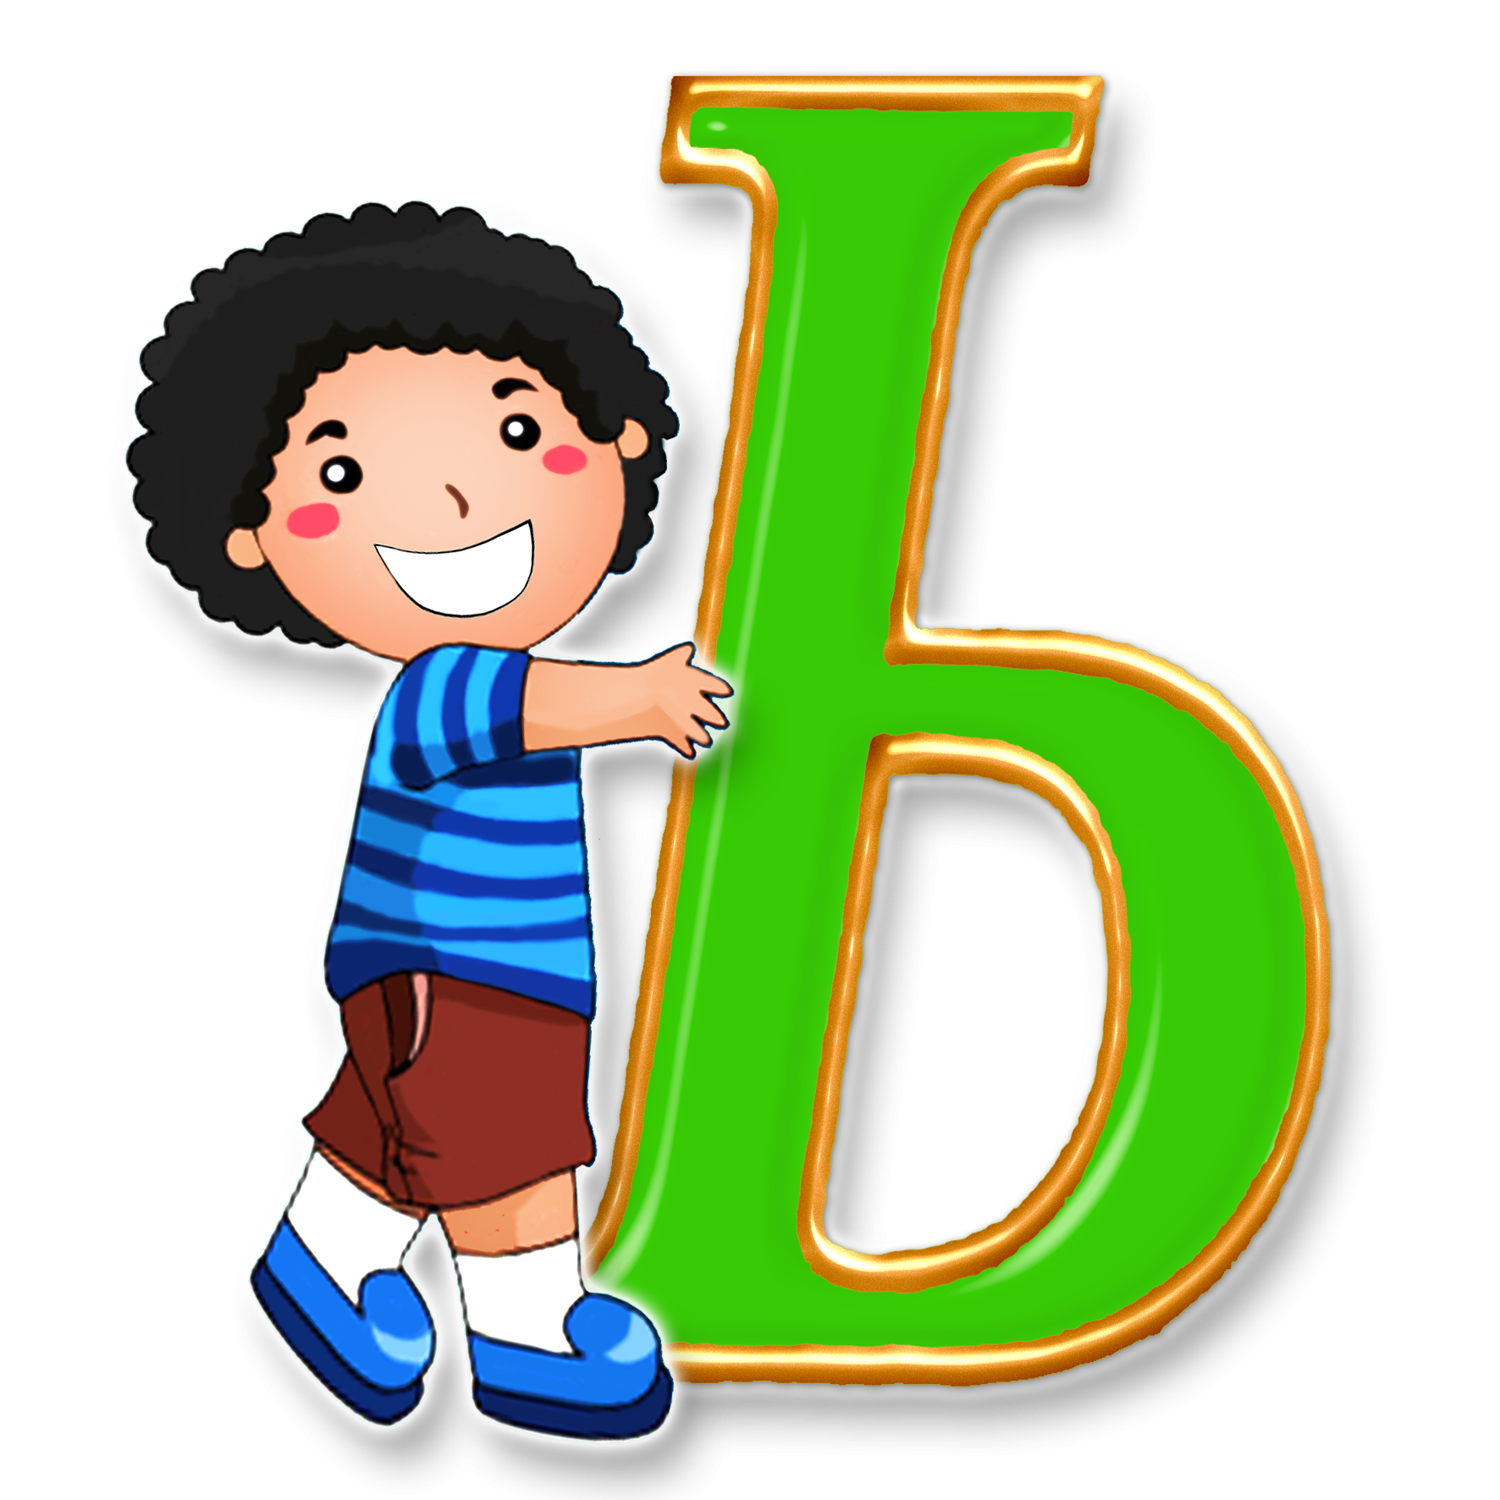 Ь 6 и 5. Алфавит и буквы. Буква ь. Буквы алфавита для детей. Буквы алфавита ь.